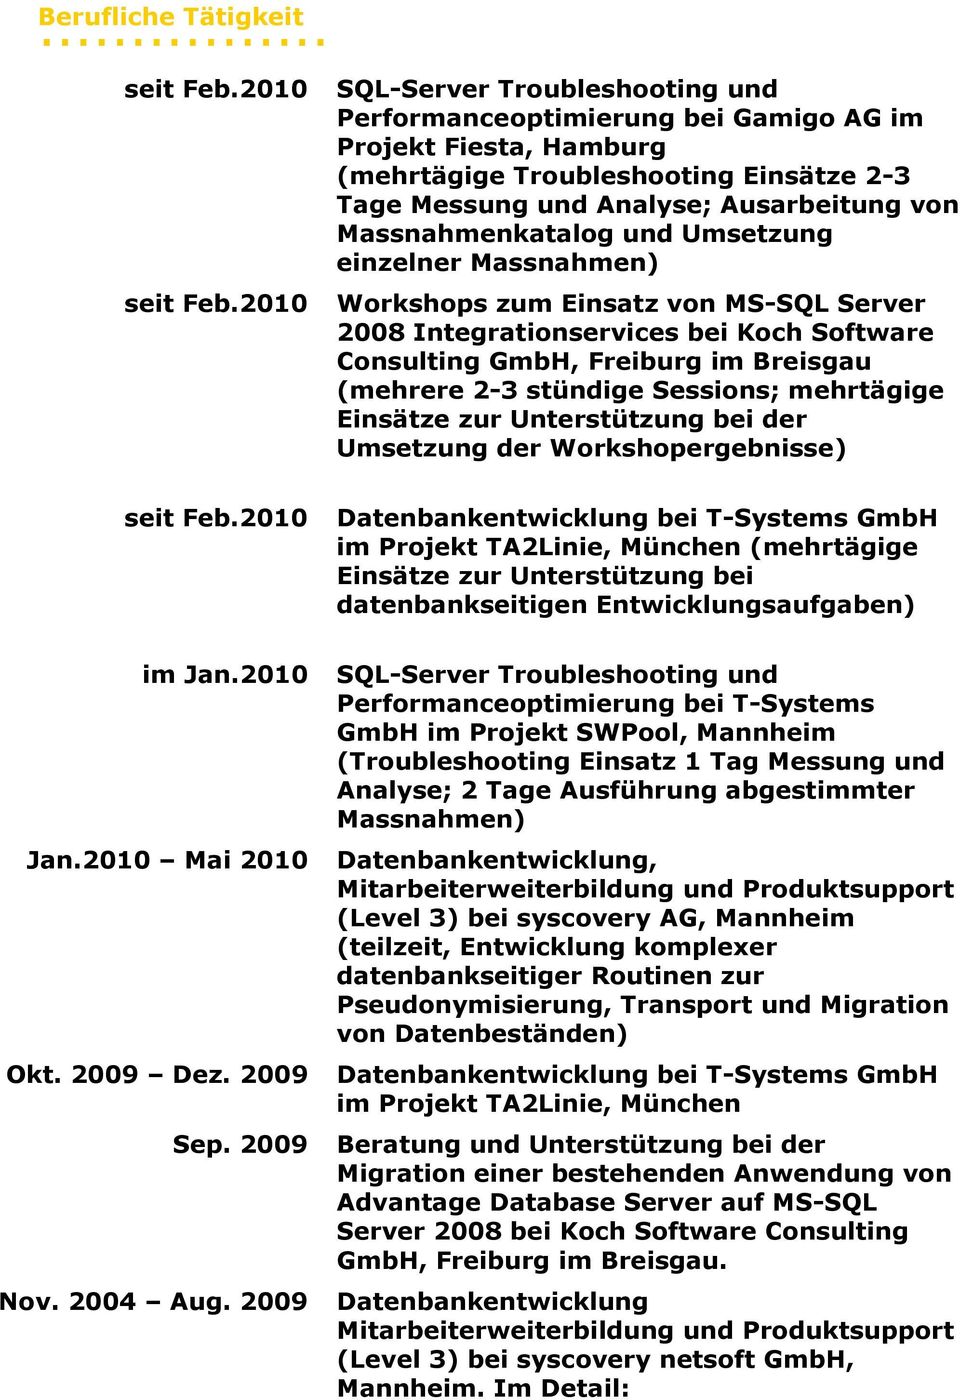 2010 SQL-Server Troubleshooting und Performanceoptimierung bei Gamigo AG im Projekt Fiesta, Hamburg (mehrtägige Troubleshooting Einsätze 2-3 Tage Messung und Analyse; Ausarbeitung von